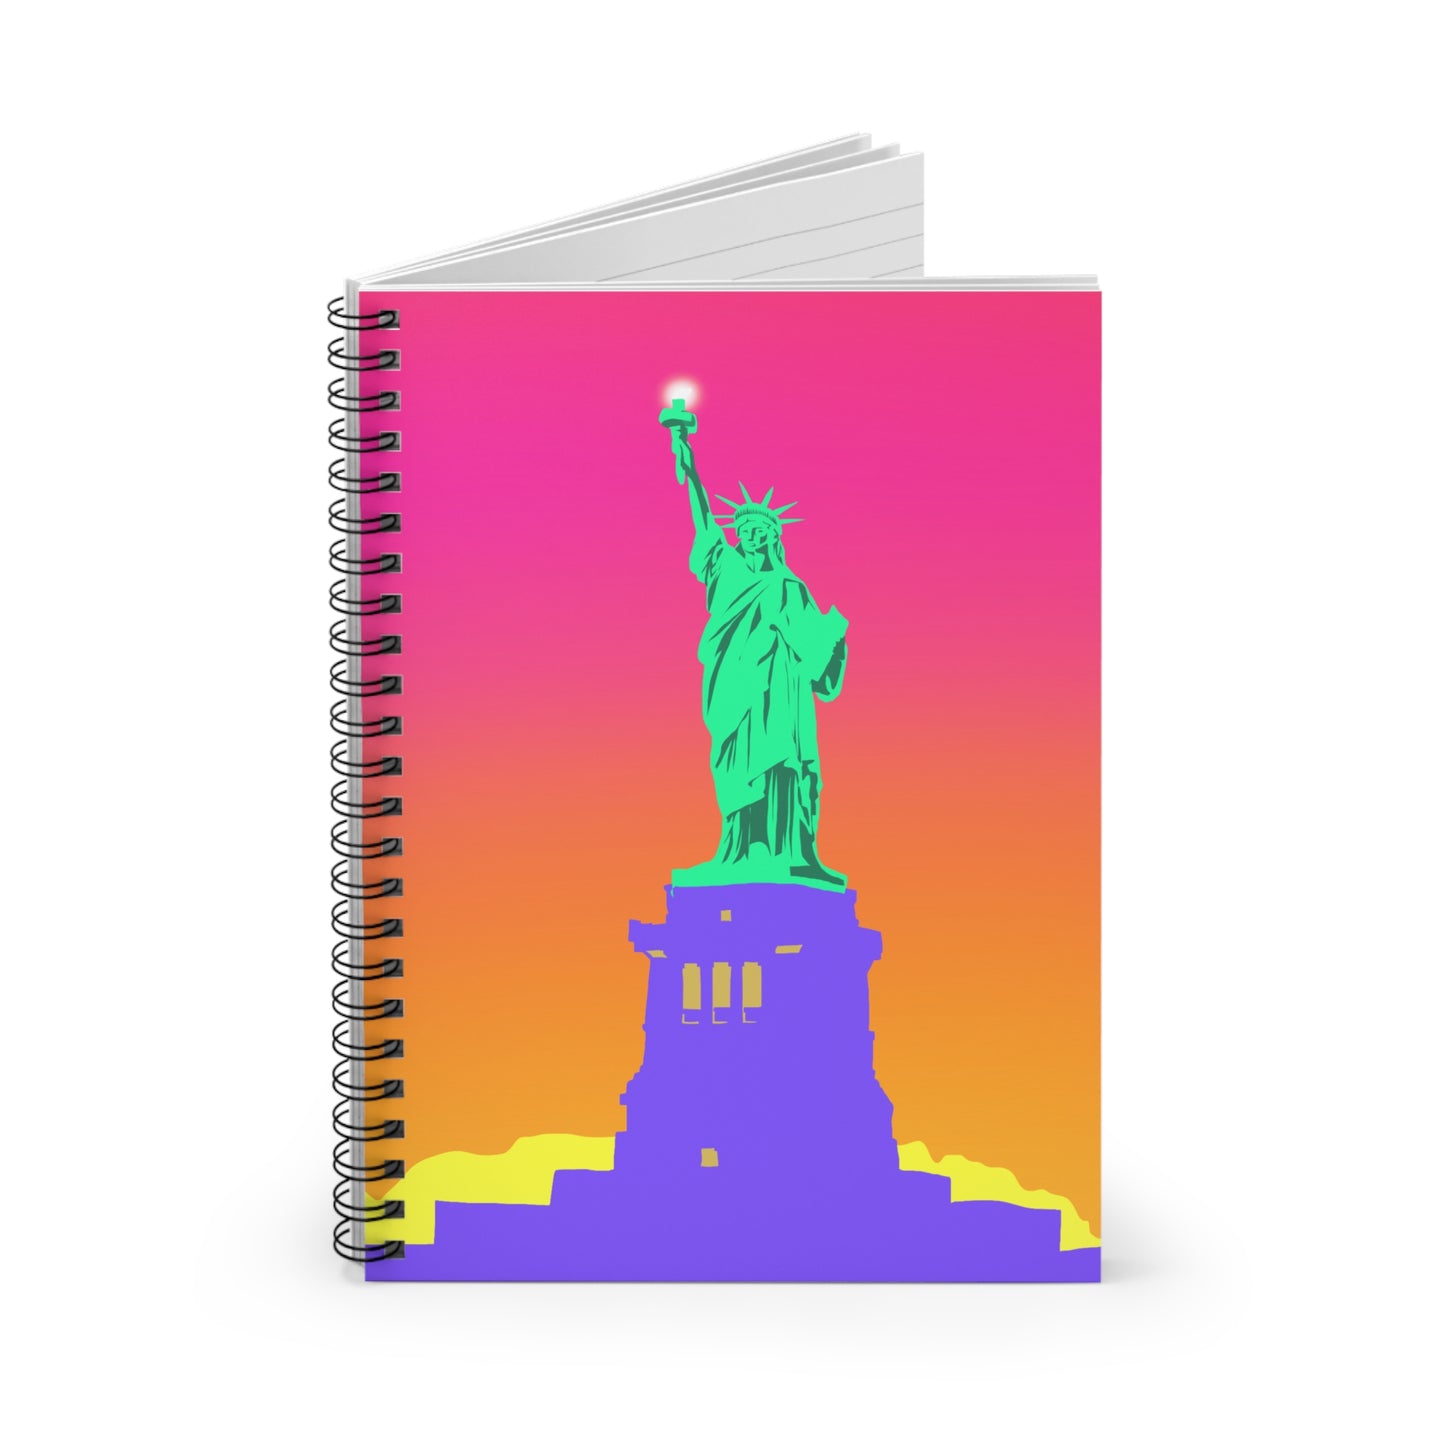 Statue of Liberty Pop Art, Spiral Notebook, Ruled Line